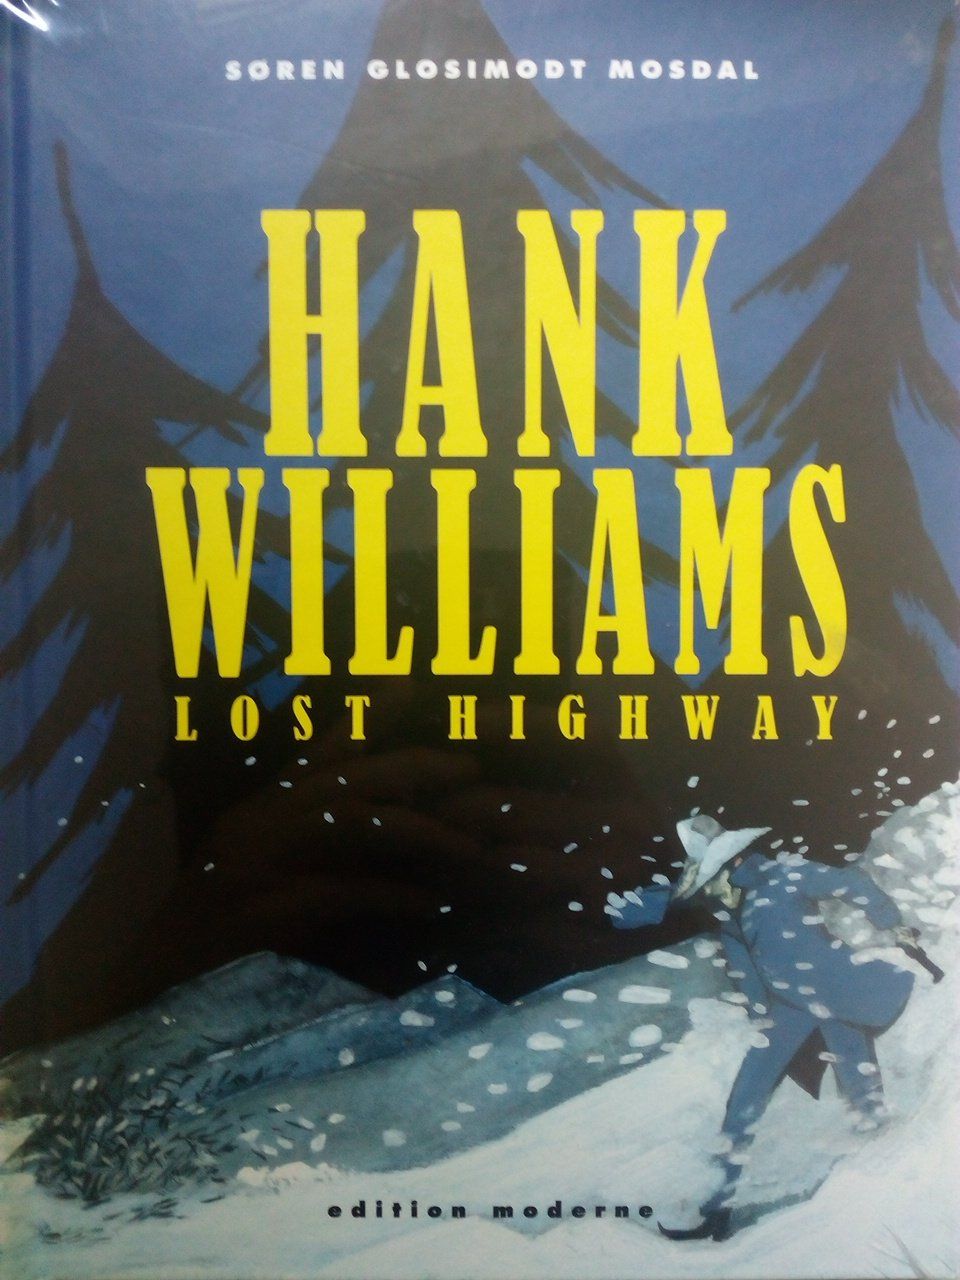 Hank Williams - Lost Highway - Mosdal, Sören G